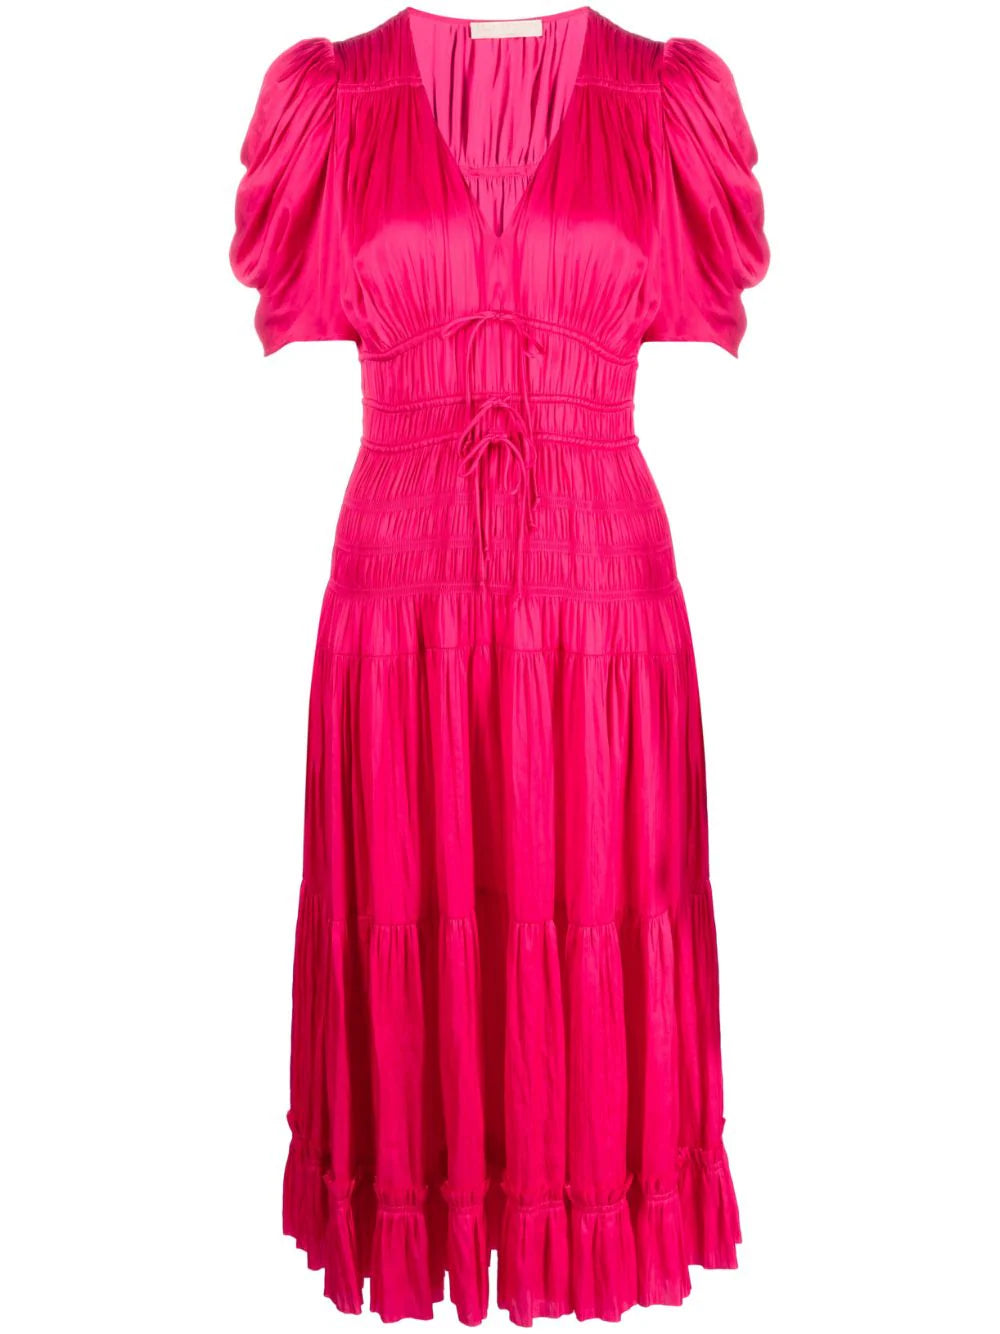 Daria plisse satin Dress, pink